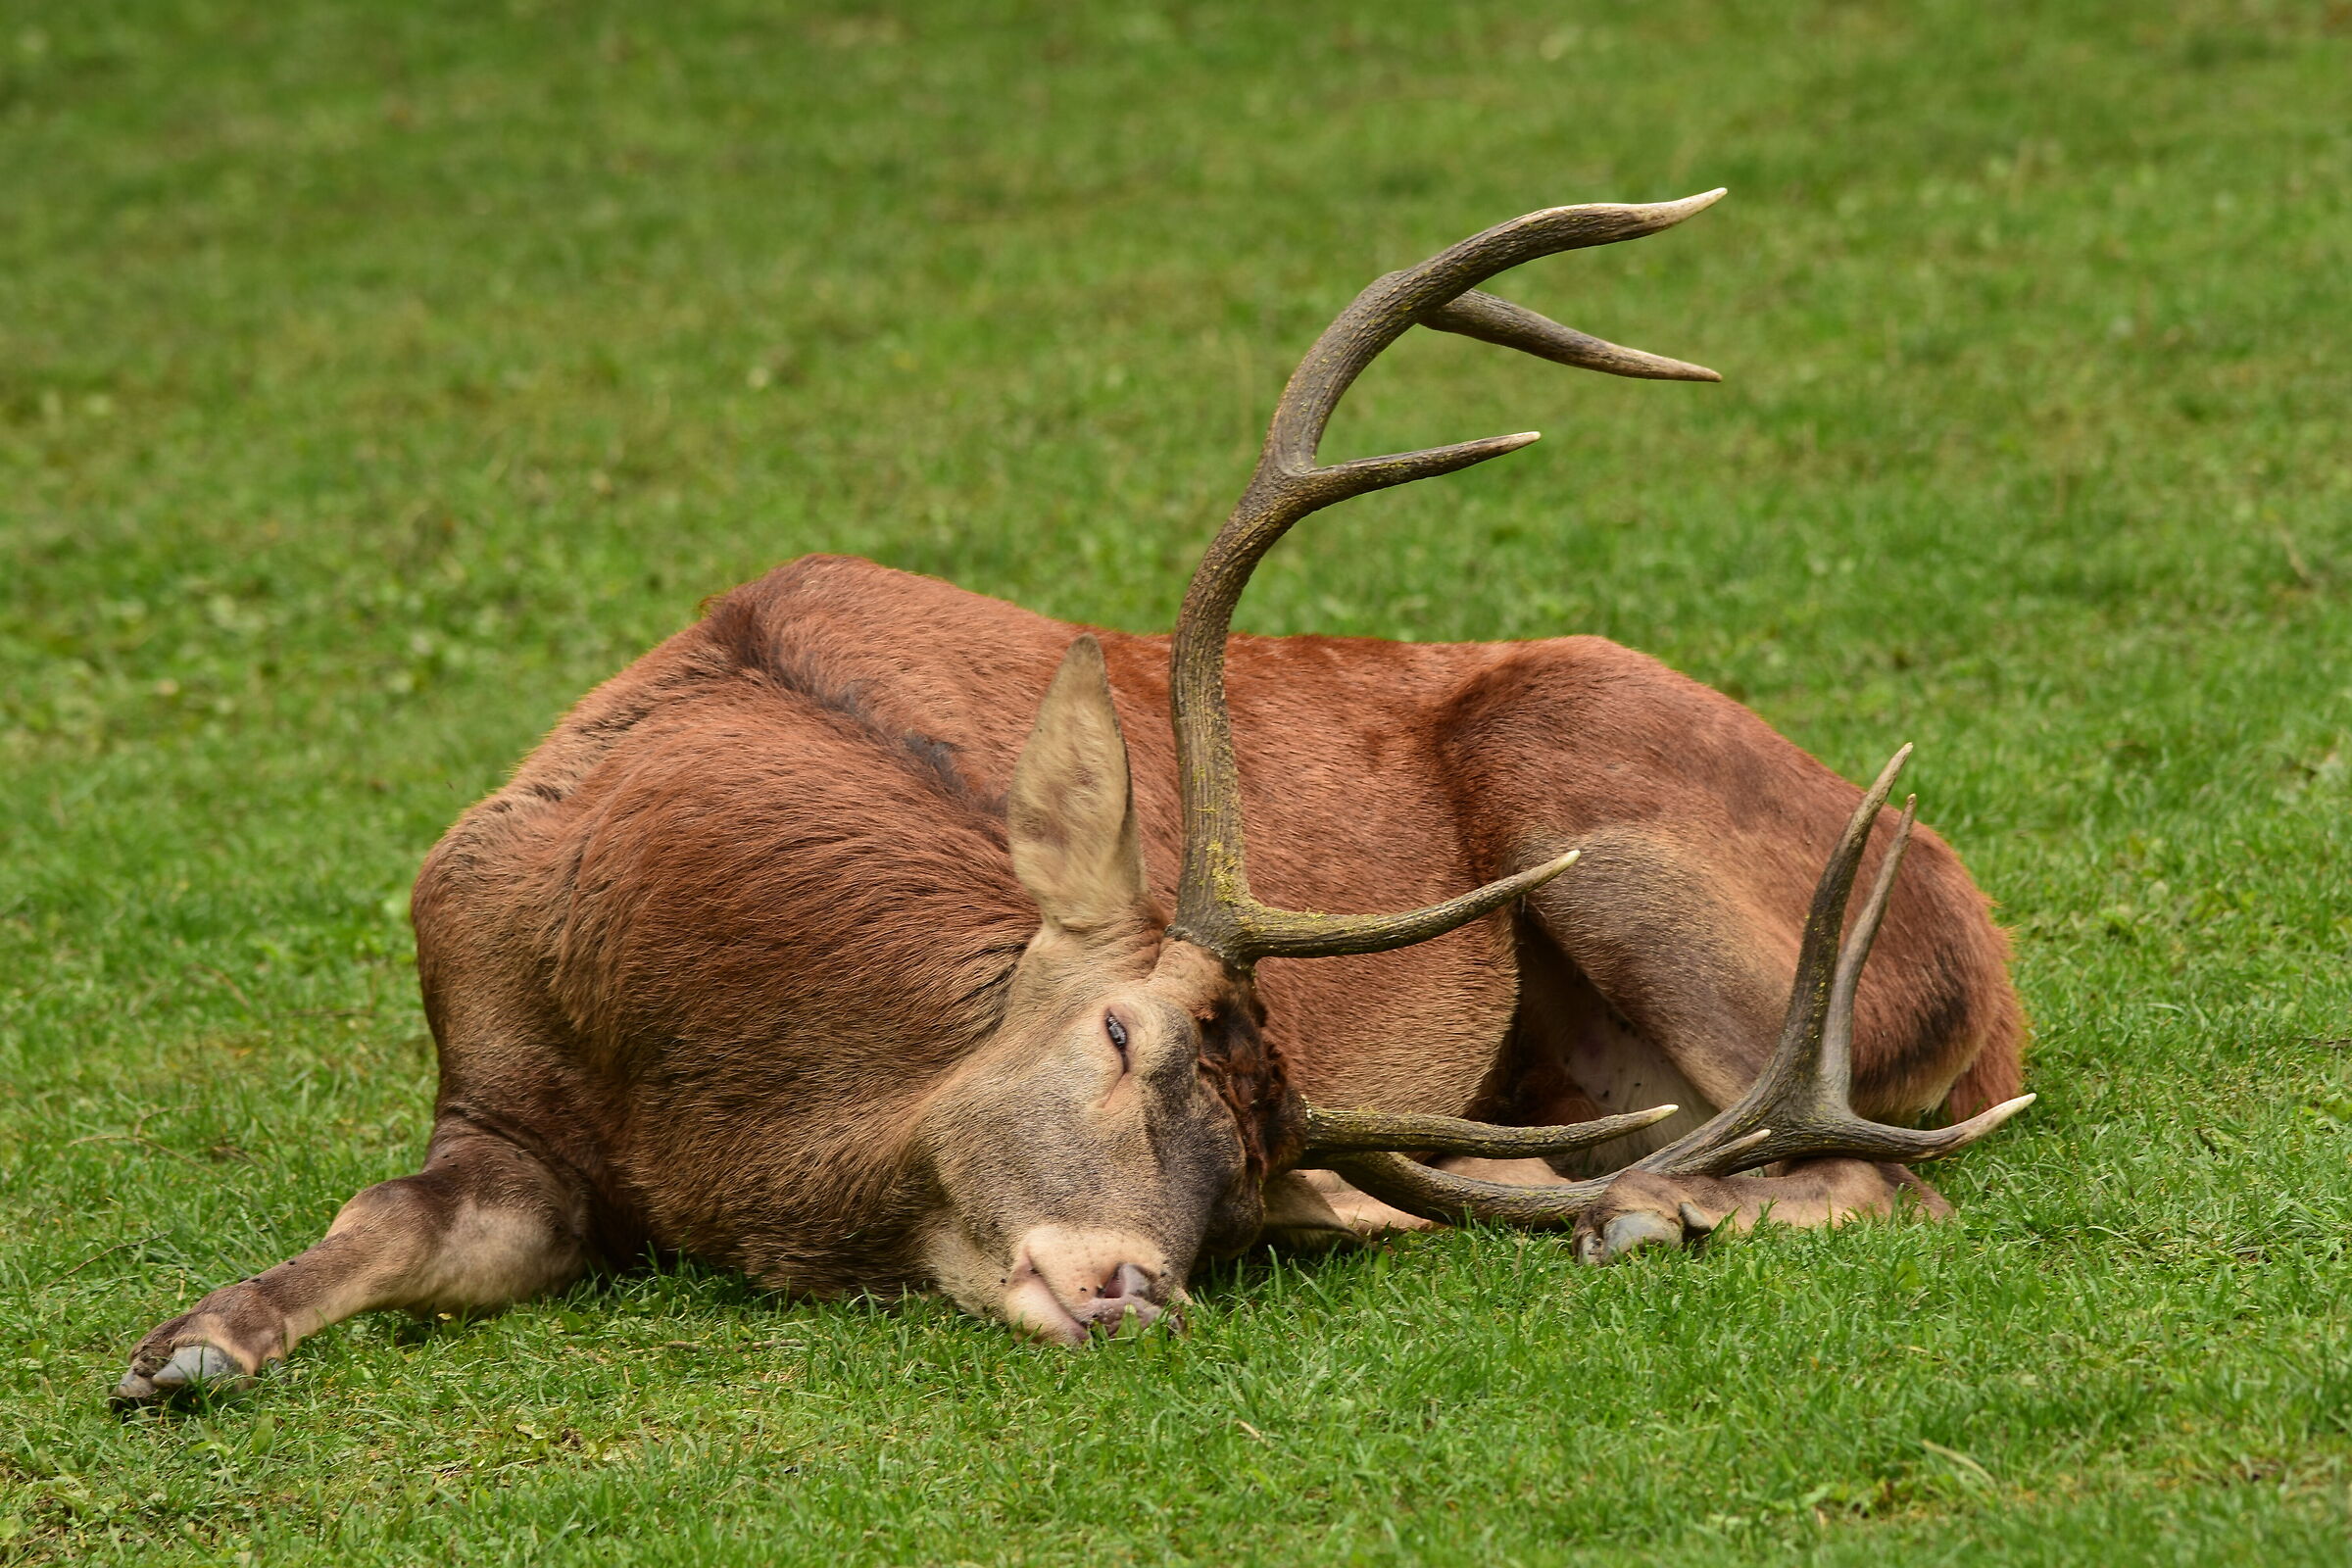 Deer at rest...